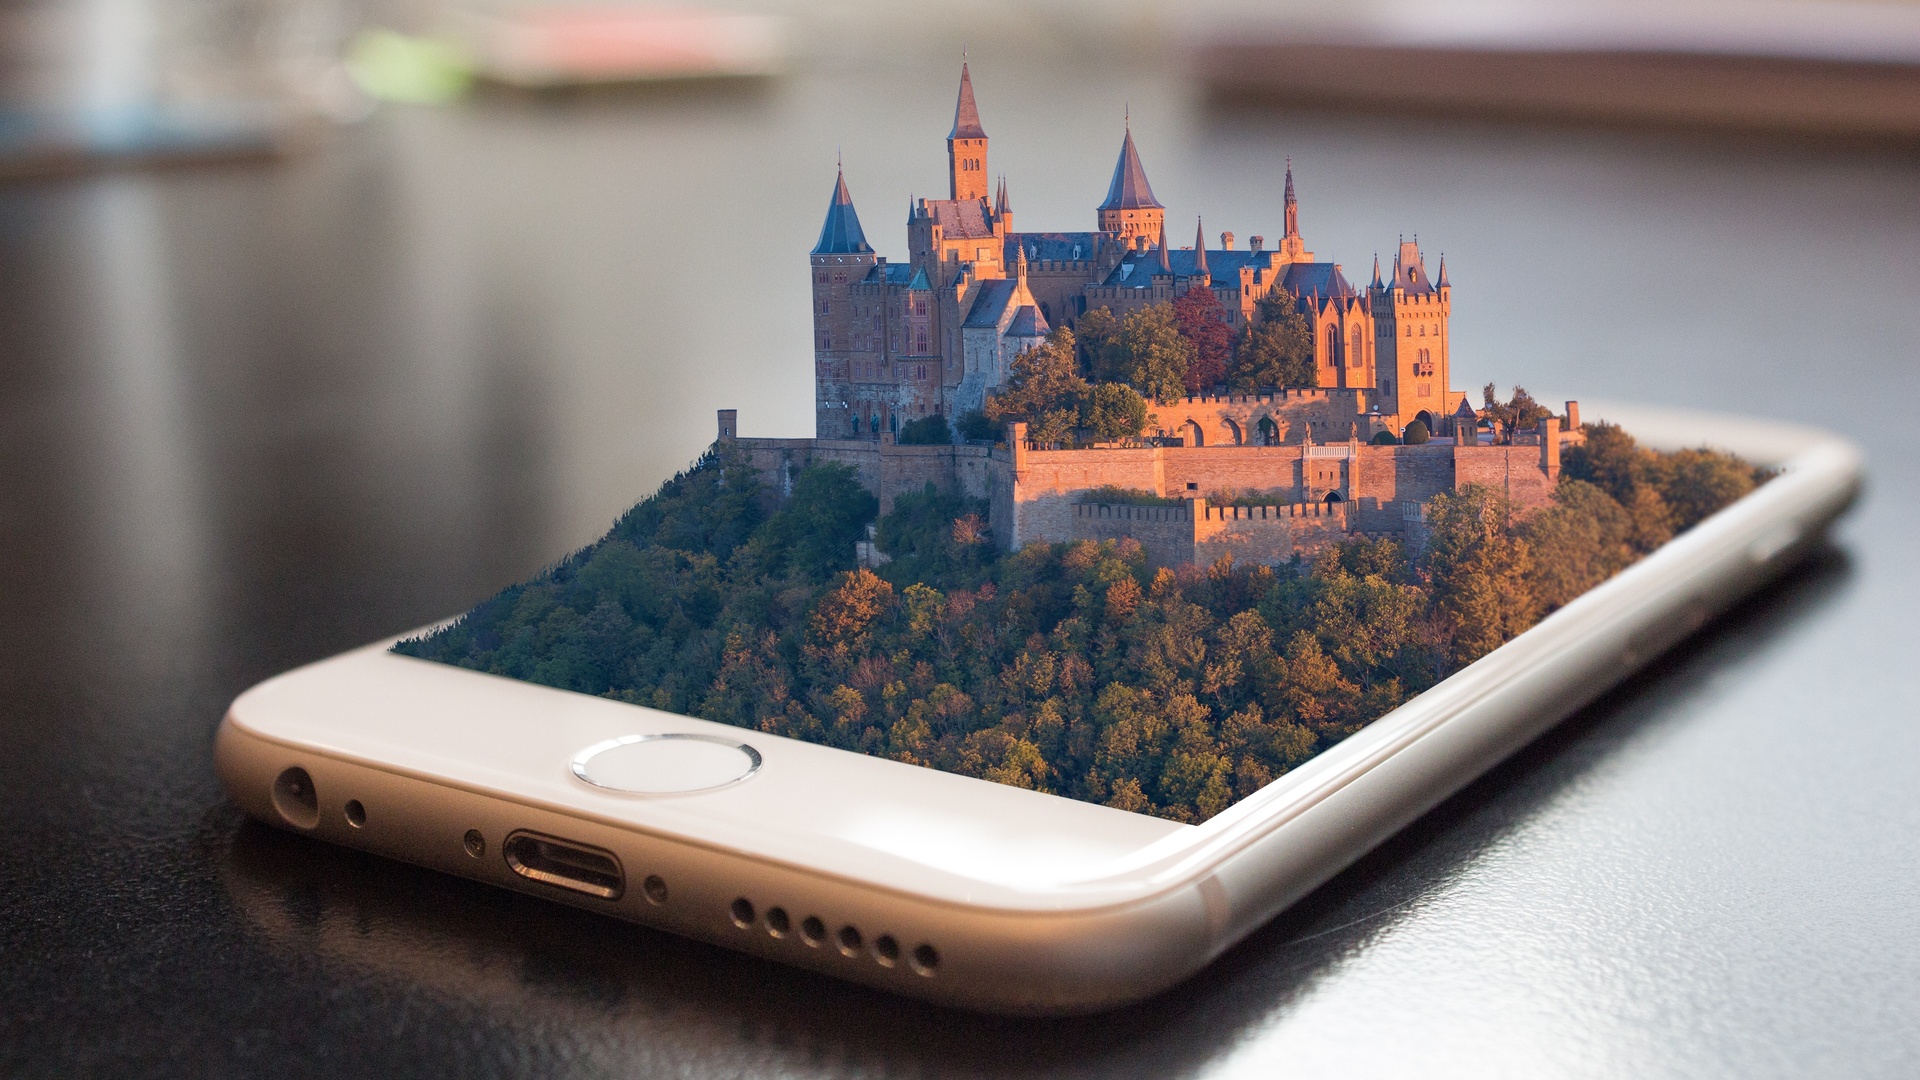 移动电话 智能手机 电话 触摸屏 屏幕 城堡 创意壁纸